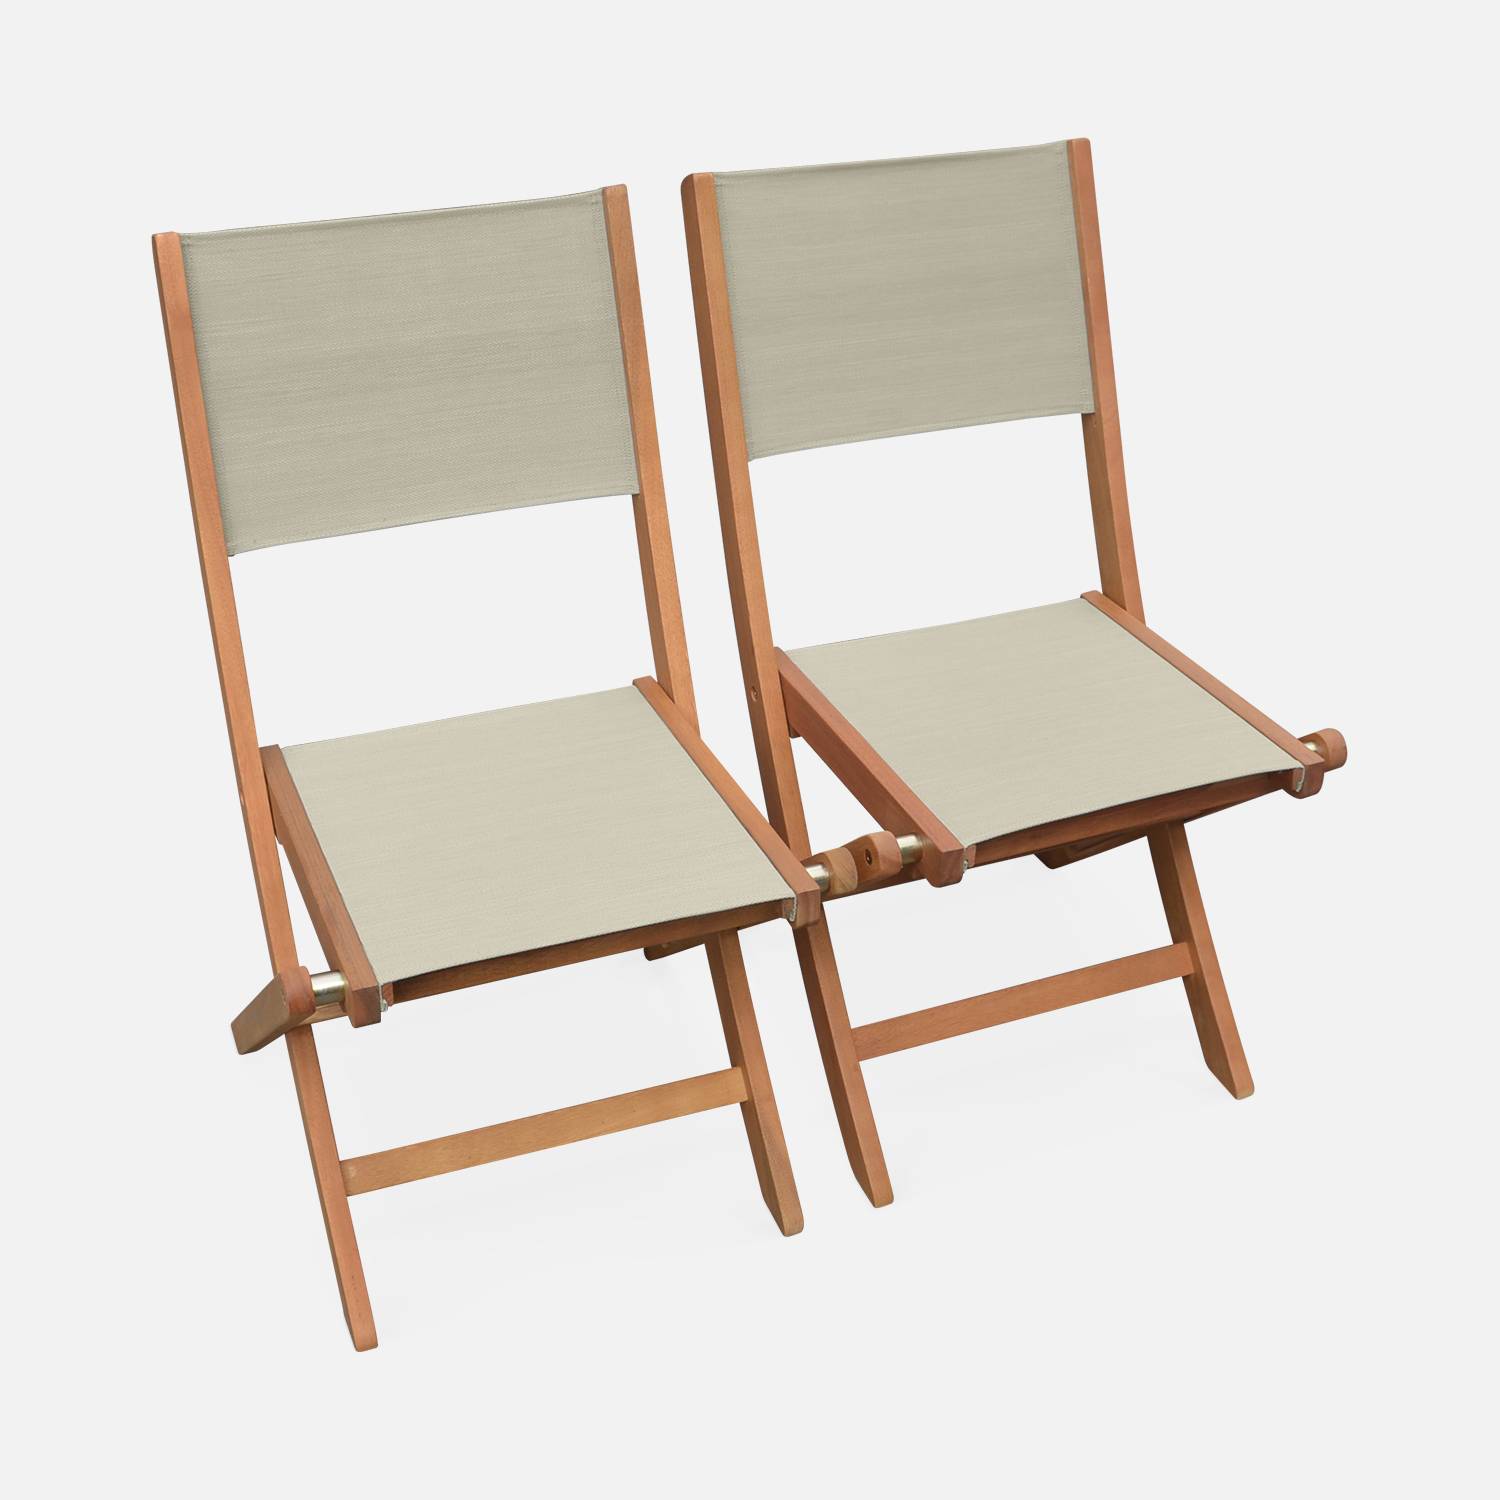 Gartenstühle aus Holz und Textilene - Almeria taupe-grau - 2 Klappstühle aus geöltem FSC Eukalyptusholz und Textilene Photo3